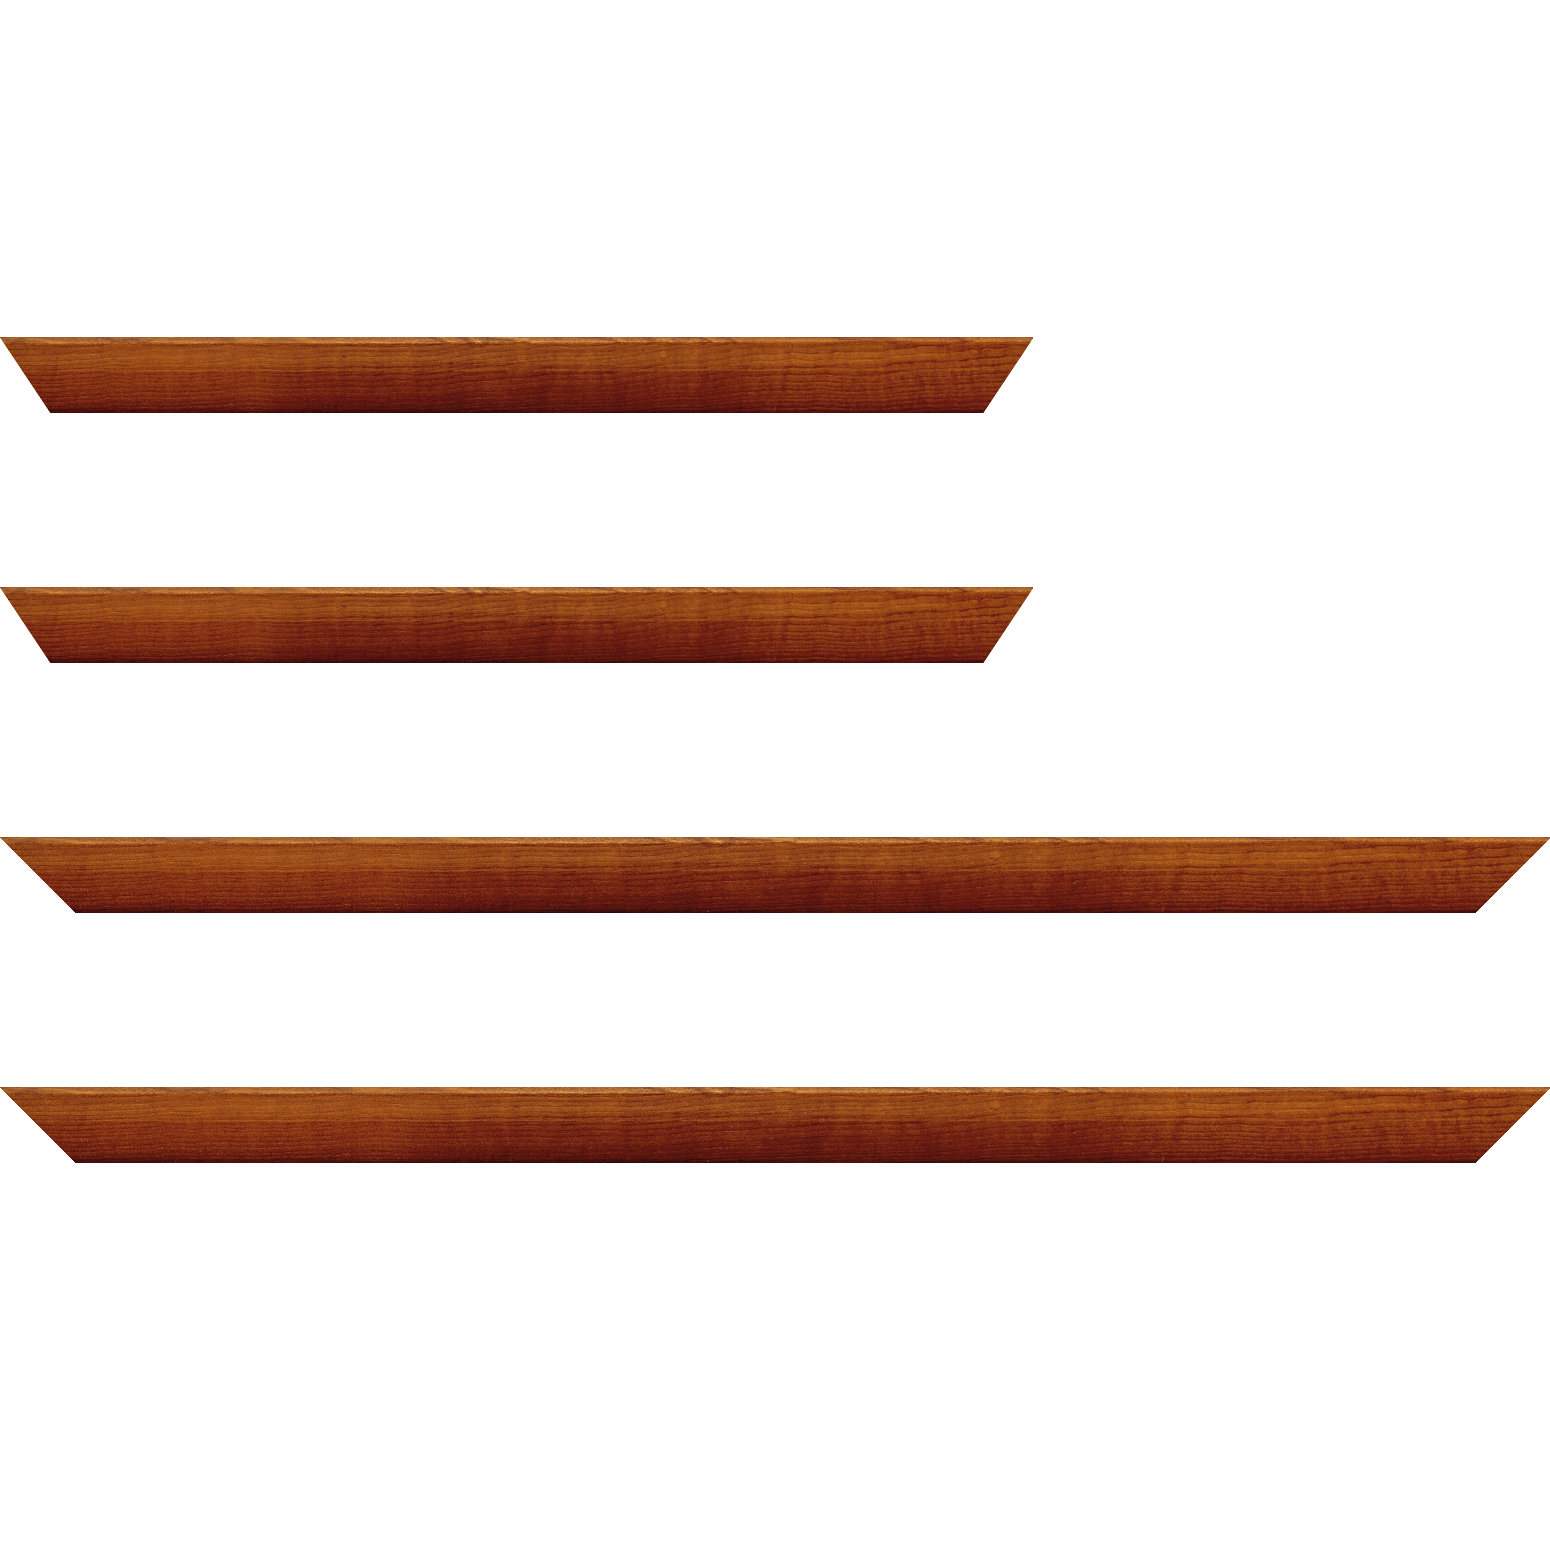 Baguette bois profil arrondi en pente plongeant largeur 2.4cm couleur marron miel finition vernis brillant,veine du bois  apparent (pin) , - 35x24